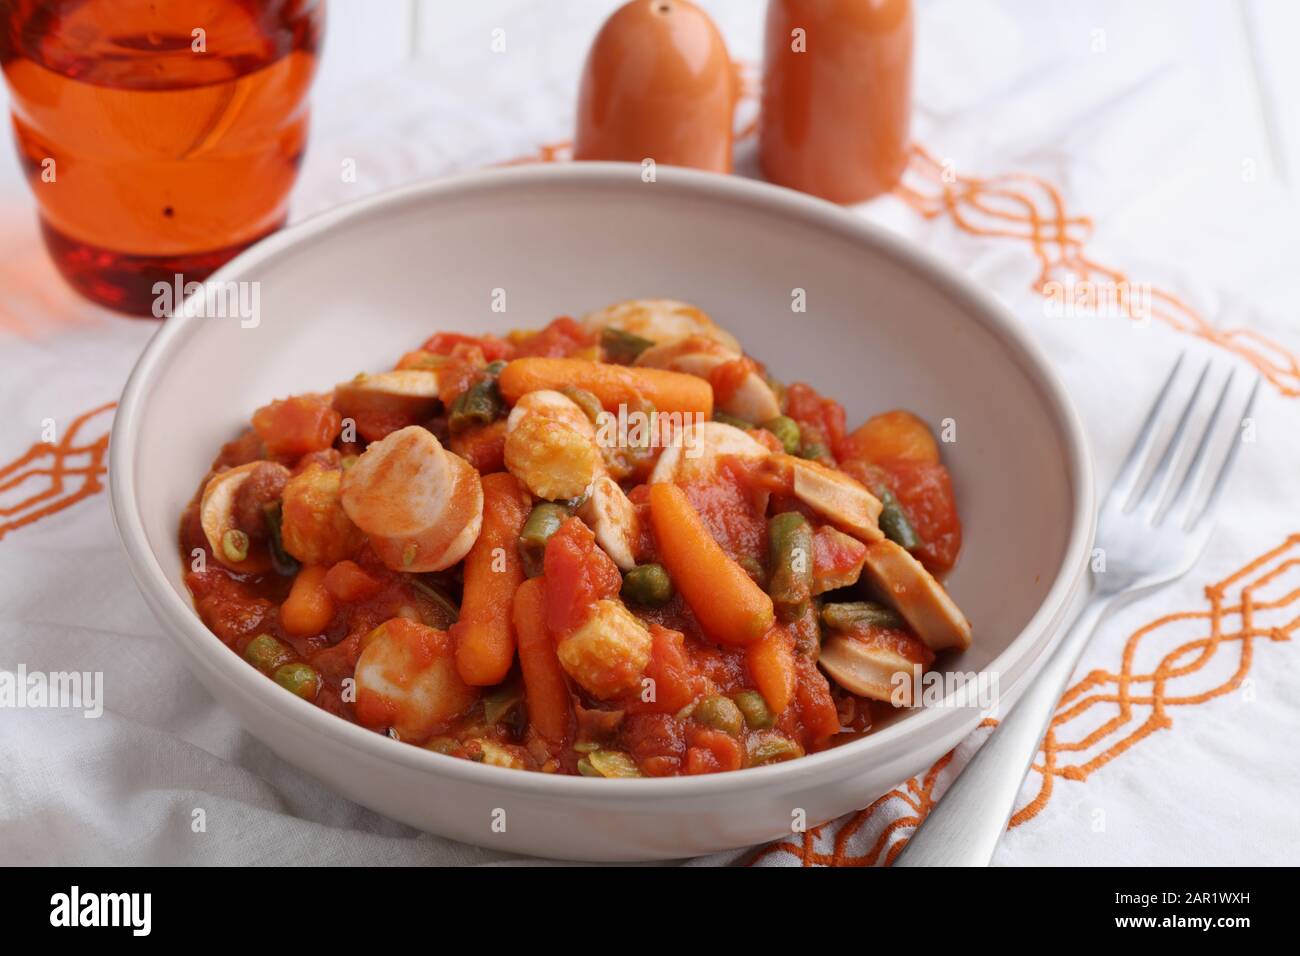 Salchicha de pollo y ragout vegetal con zanahoria, maíz, judías verdes, pimienta, guisantes verdes y salsa de tomate Foto de stock